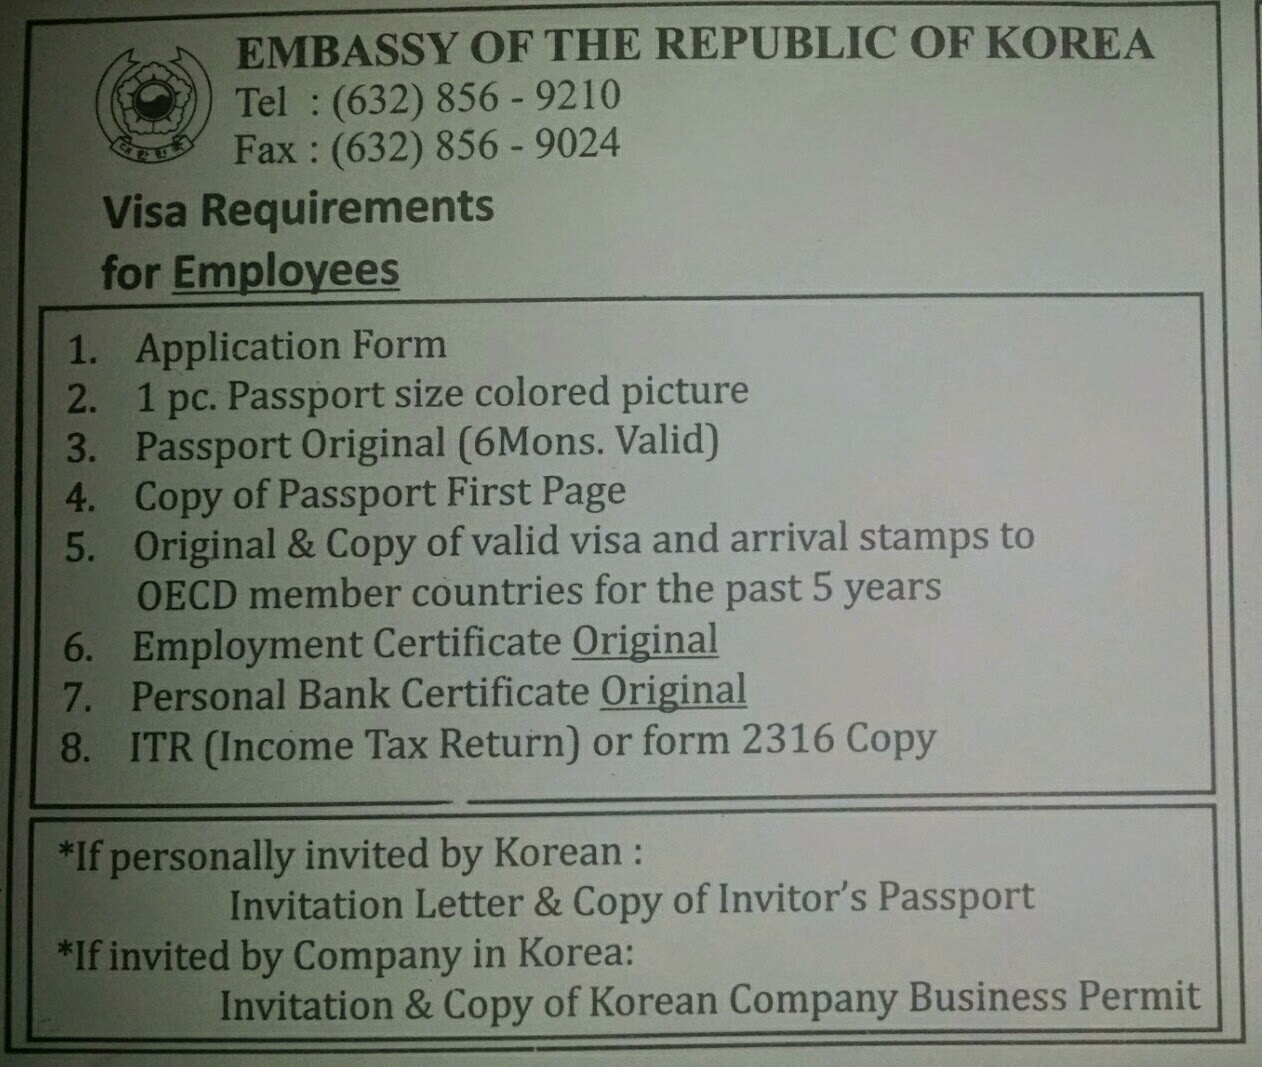 cover letter sample for visa application in korea